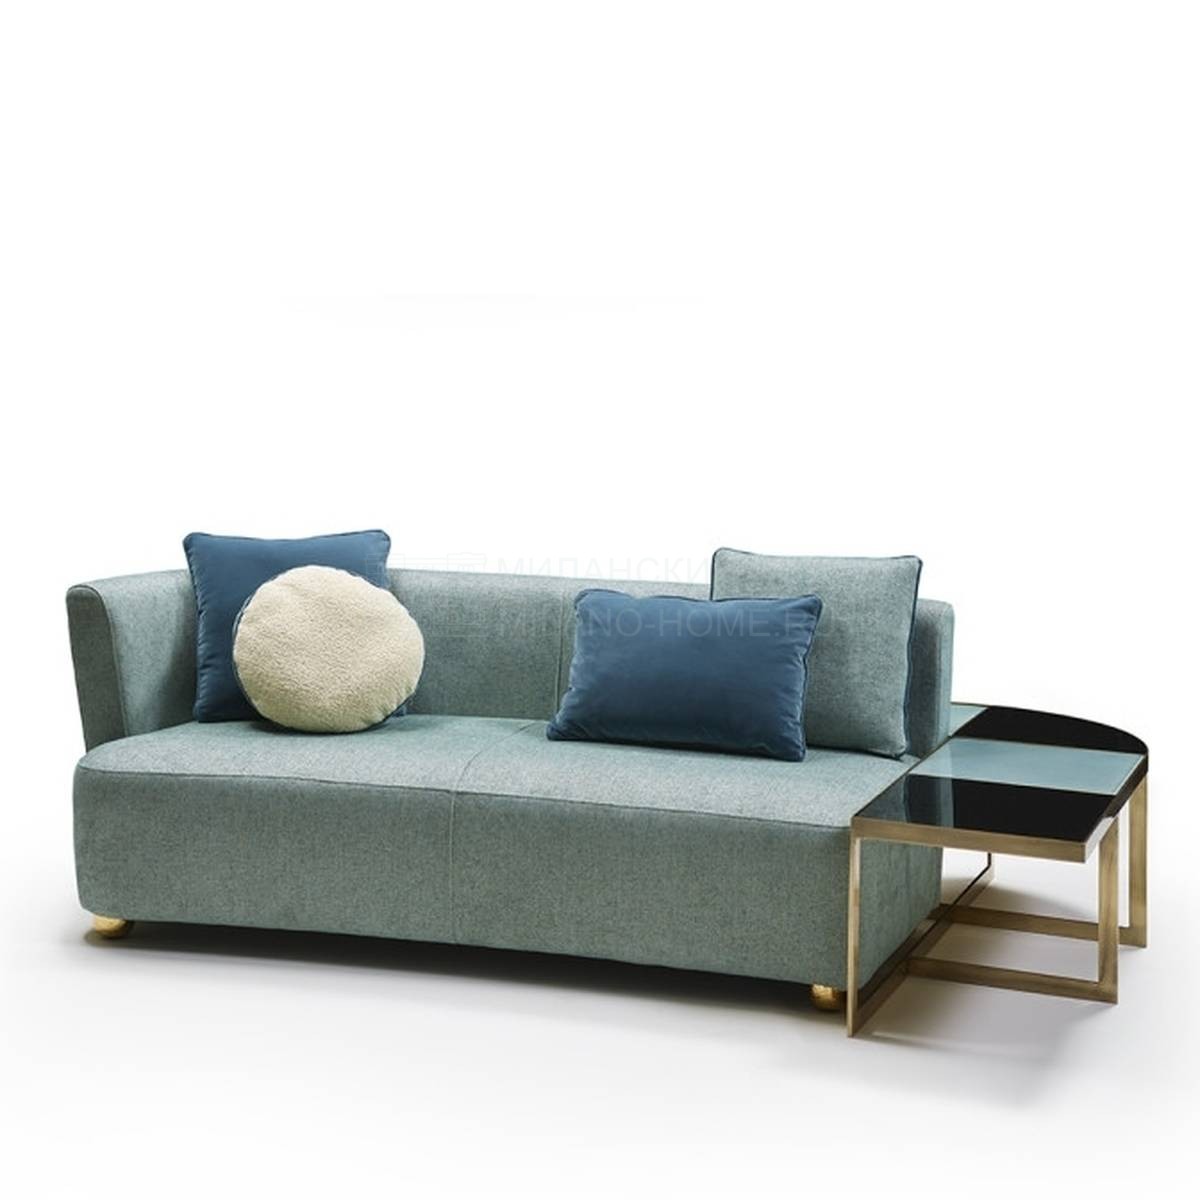 Модульный диван Baia sectional sofa из Италии фабрики MARIONI